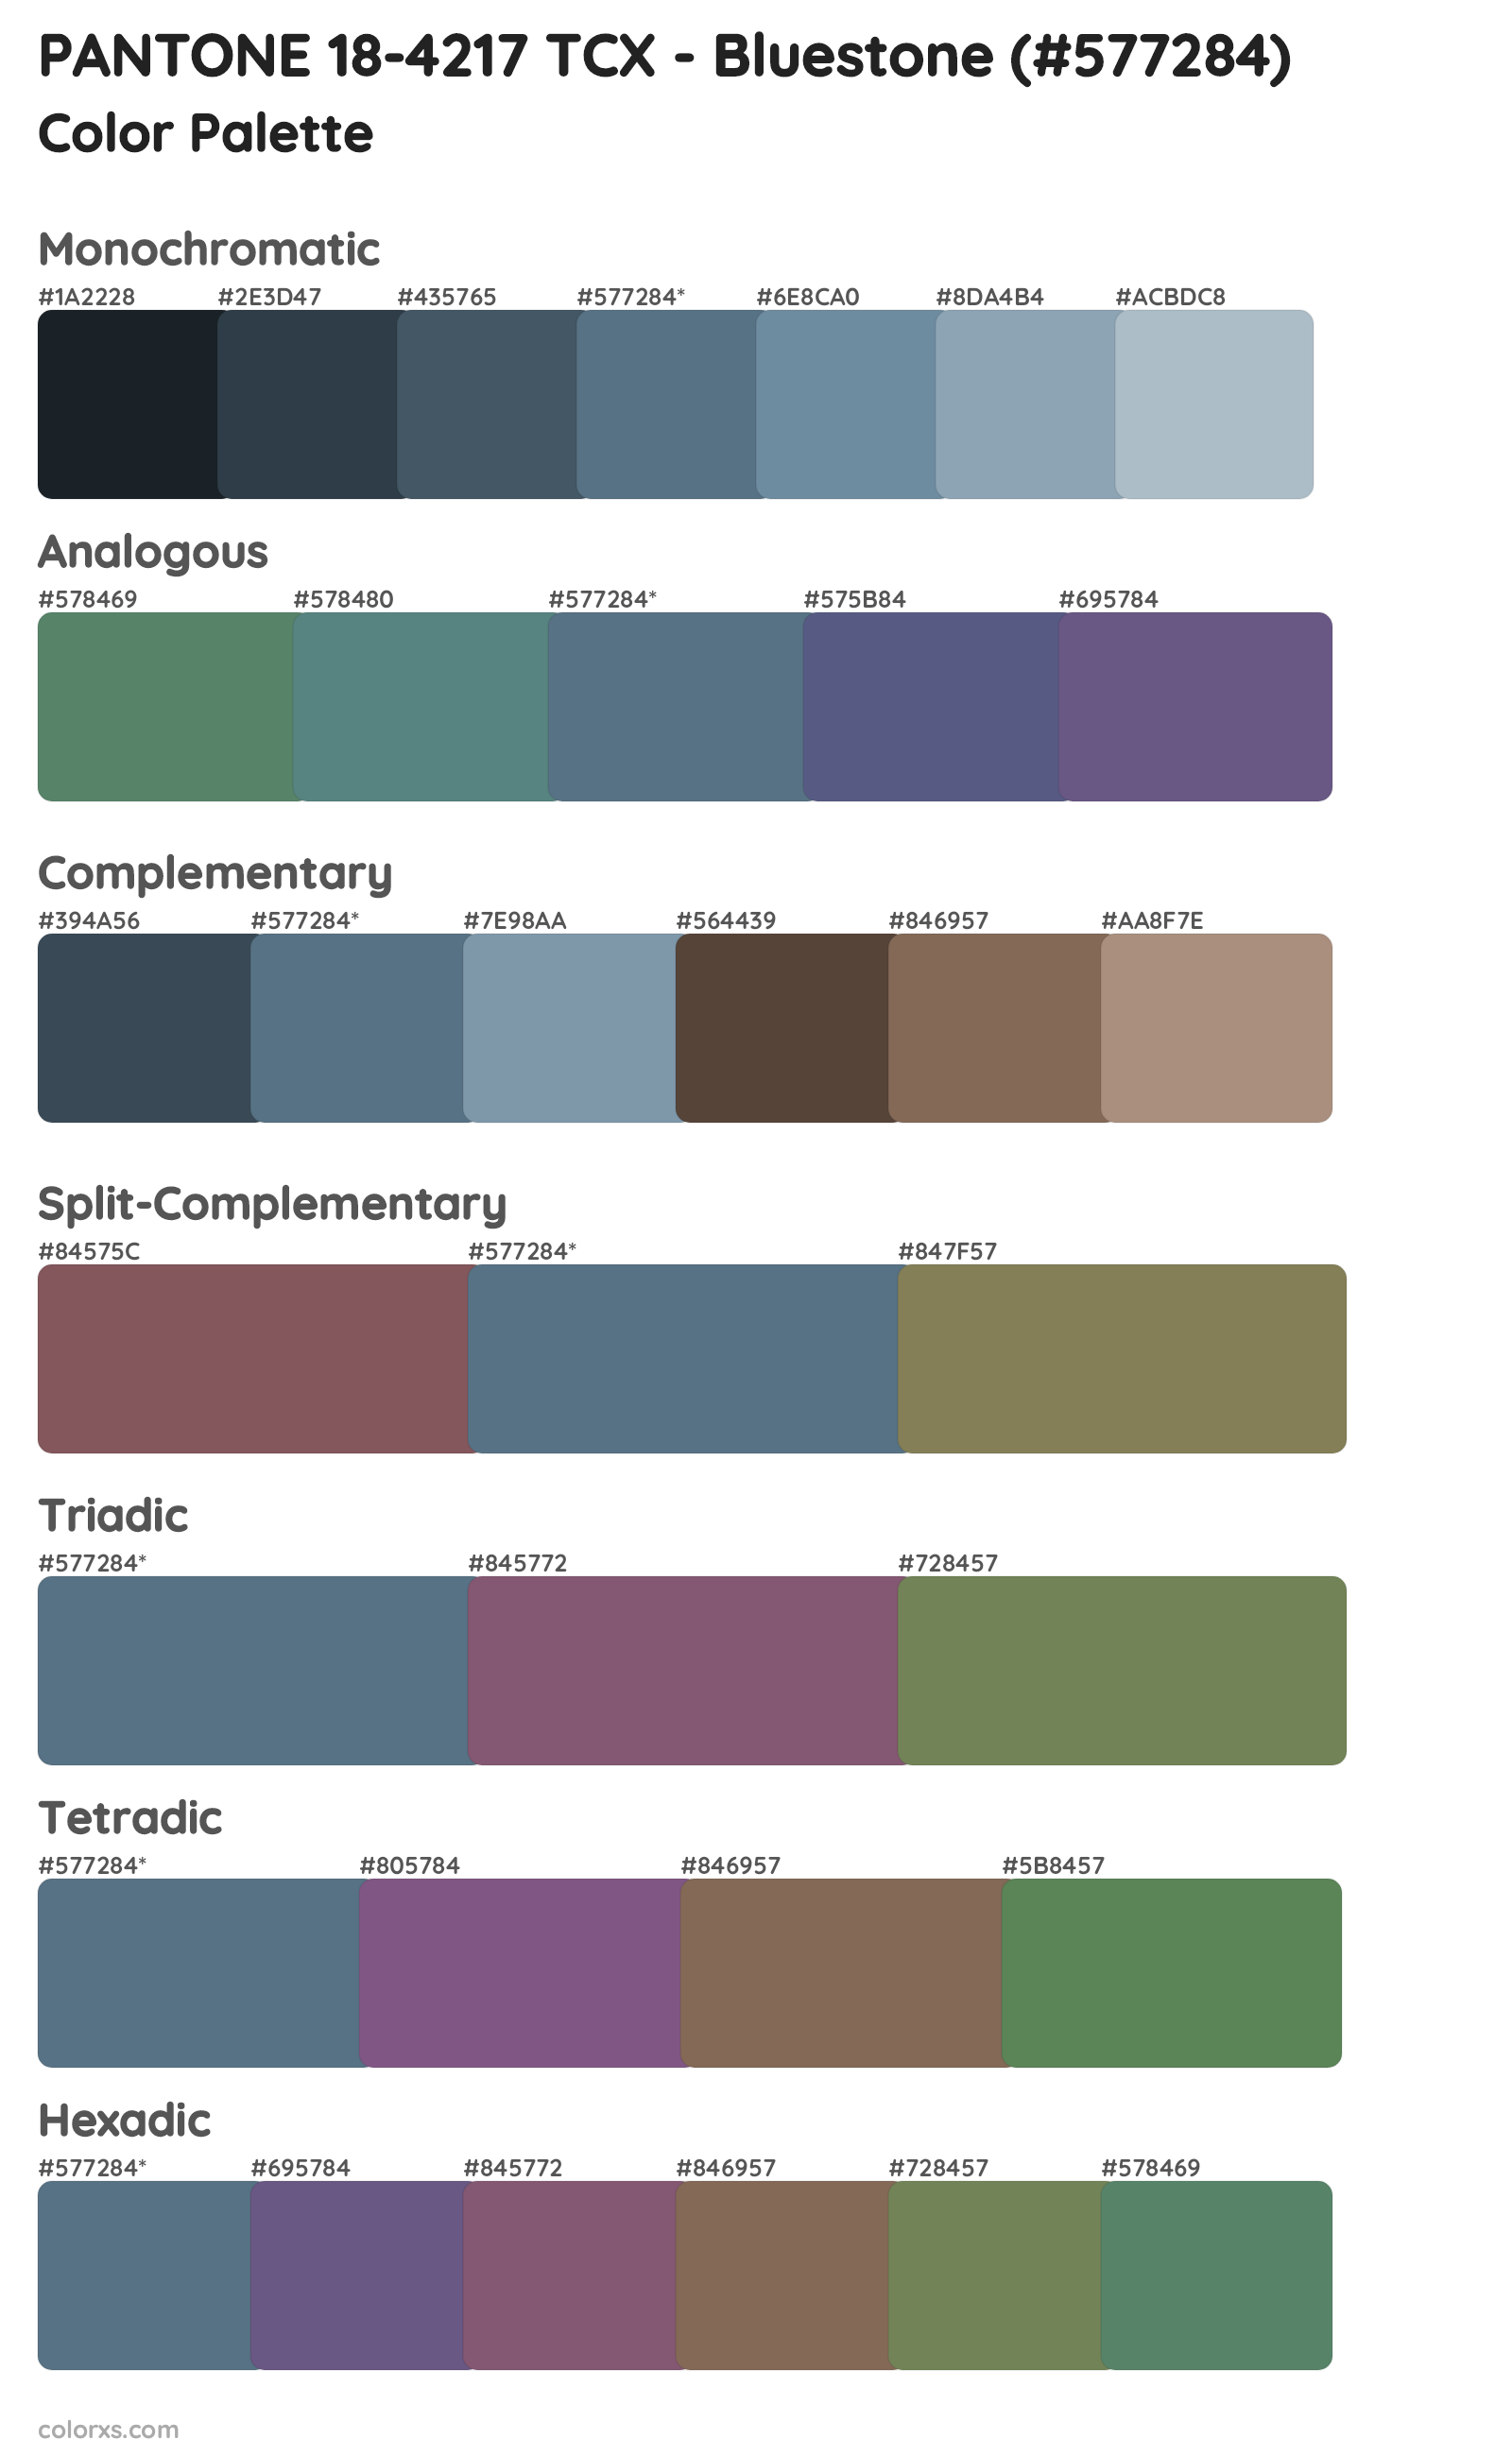 PANTONE 18-4217 TCX - Bluestone Color Scheme Palettes